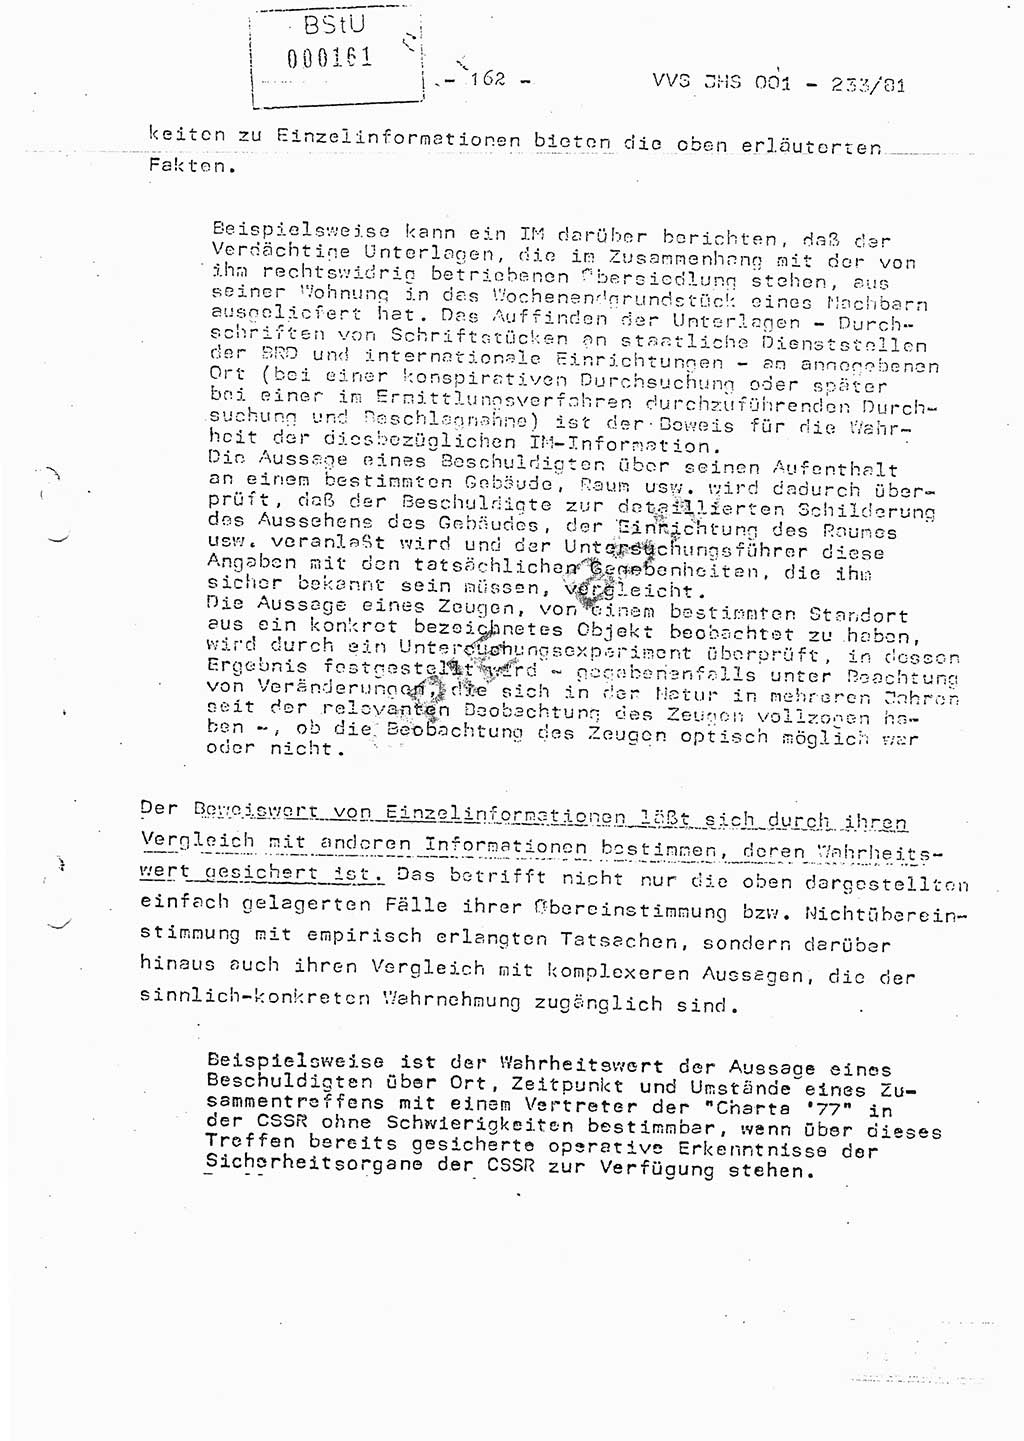 Dissertation Oberstleutnant Horst Zank (JHS), Oberstleutnant Dr. Karl-Heinz Knoblauch (JHS), Oberstleutnant Gustav-Adolf Kowalewski (HA Ⅸ), Oberstleutnant Wolfgang Plötner (HA Ⅸ), Ministerium für Staatssicherheit (MfS) [Deutsche Demokratische Republik (DDR)], Juristische Hochschule (JHS), Vertrauliche Verschlußsache (VVS) o001-233/81, Potsdam 1981, Blatt 162 (Diss. MfS DDR JHS VVS o001-233/81 1981, Bl. 162)